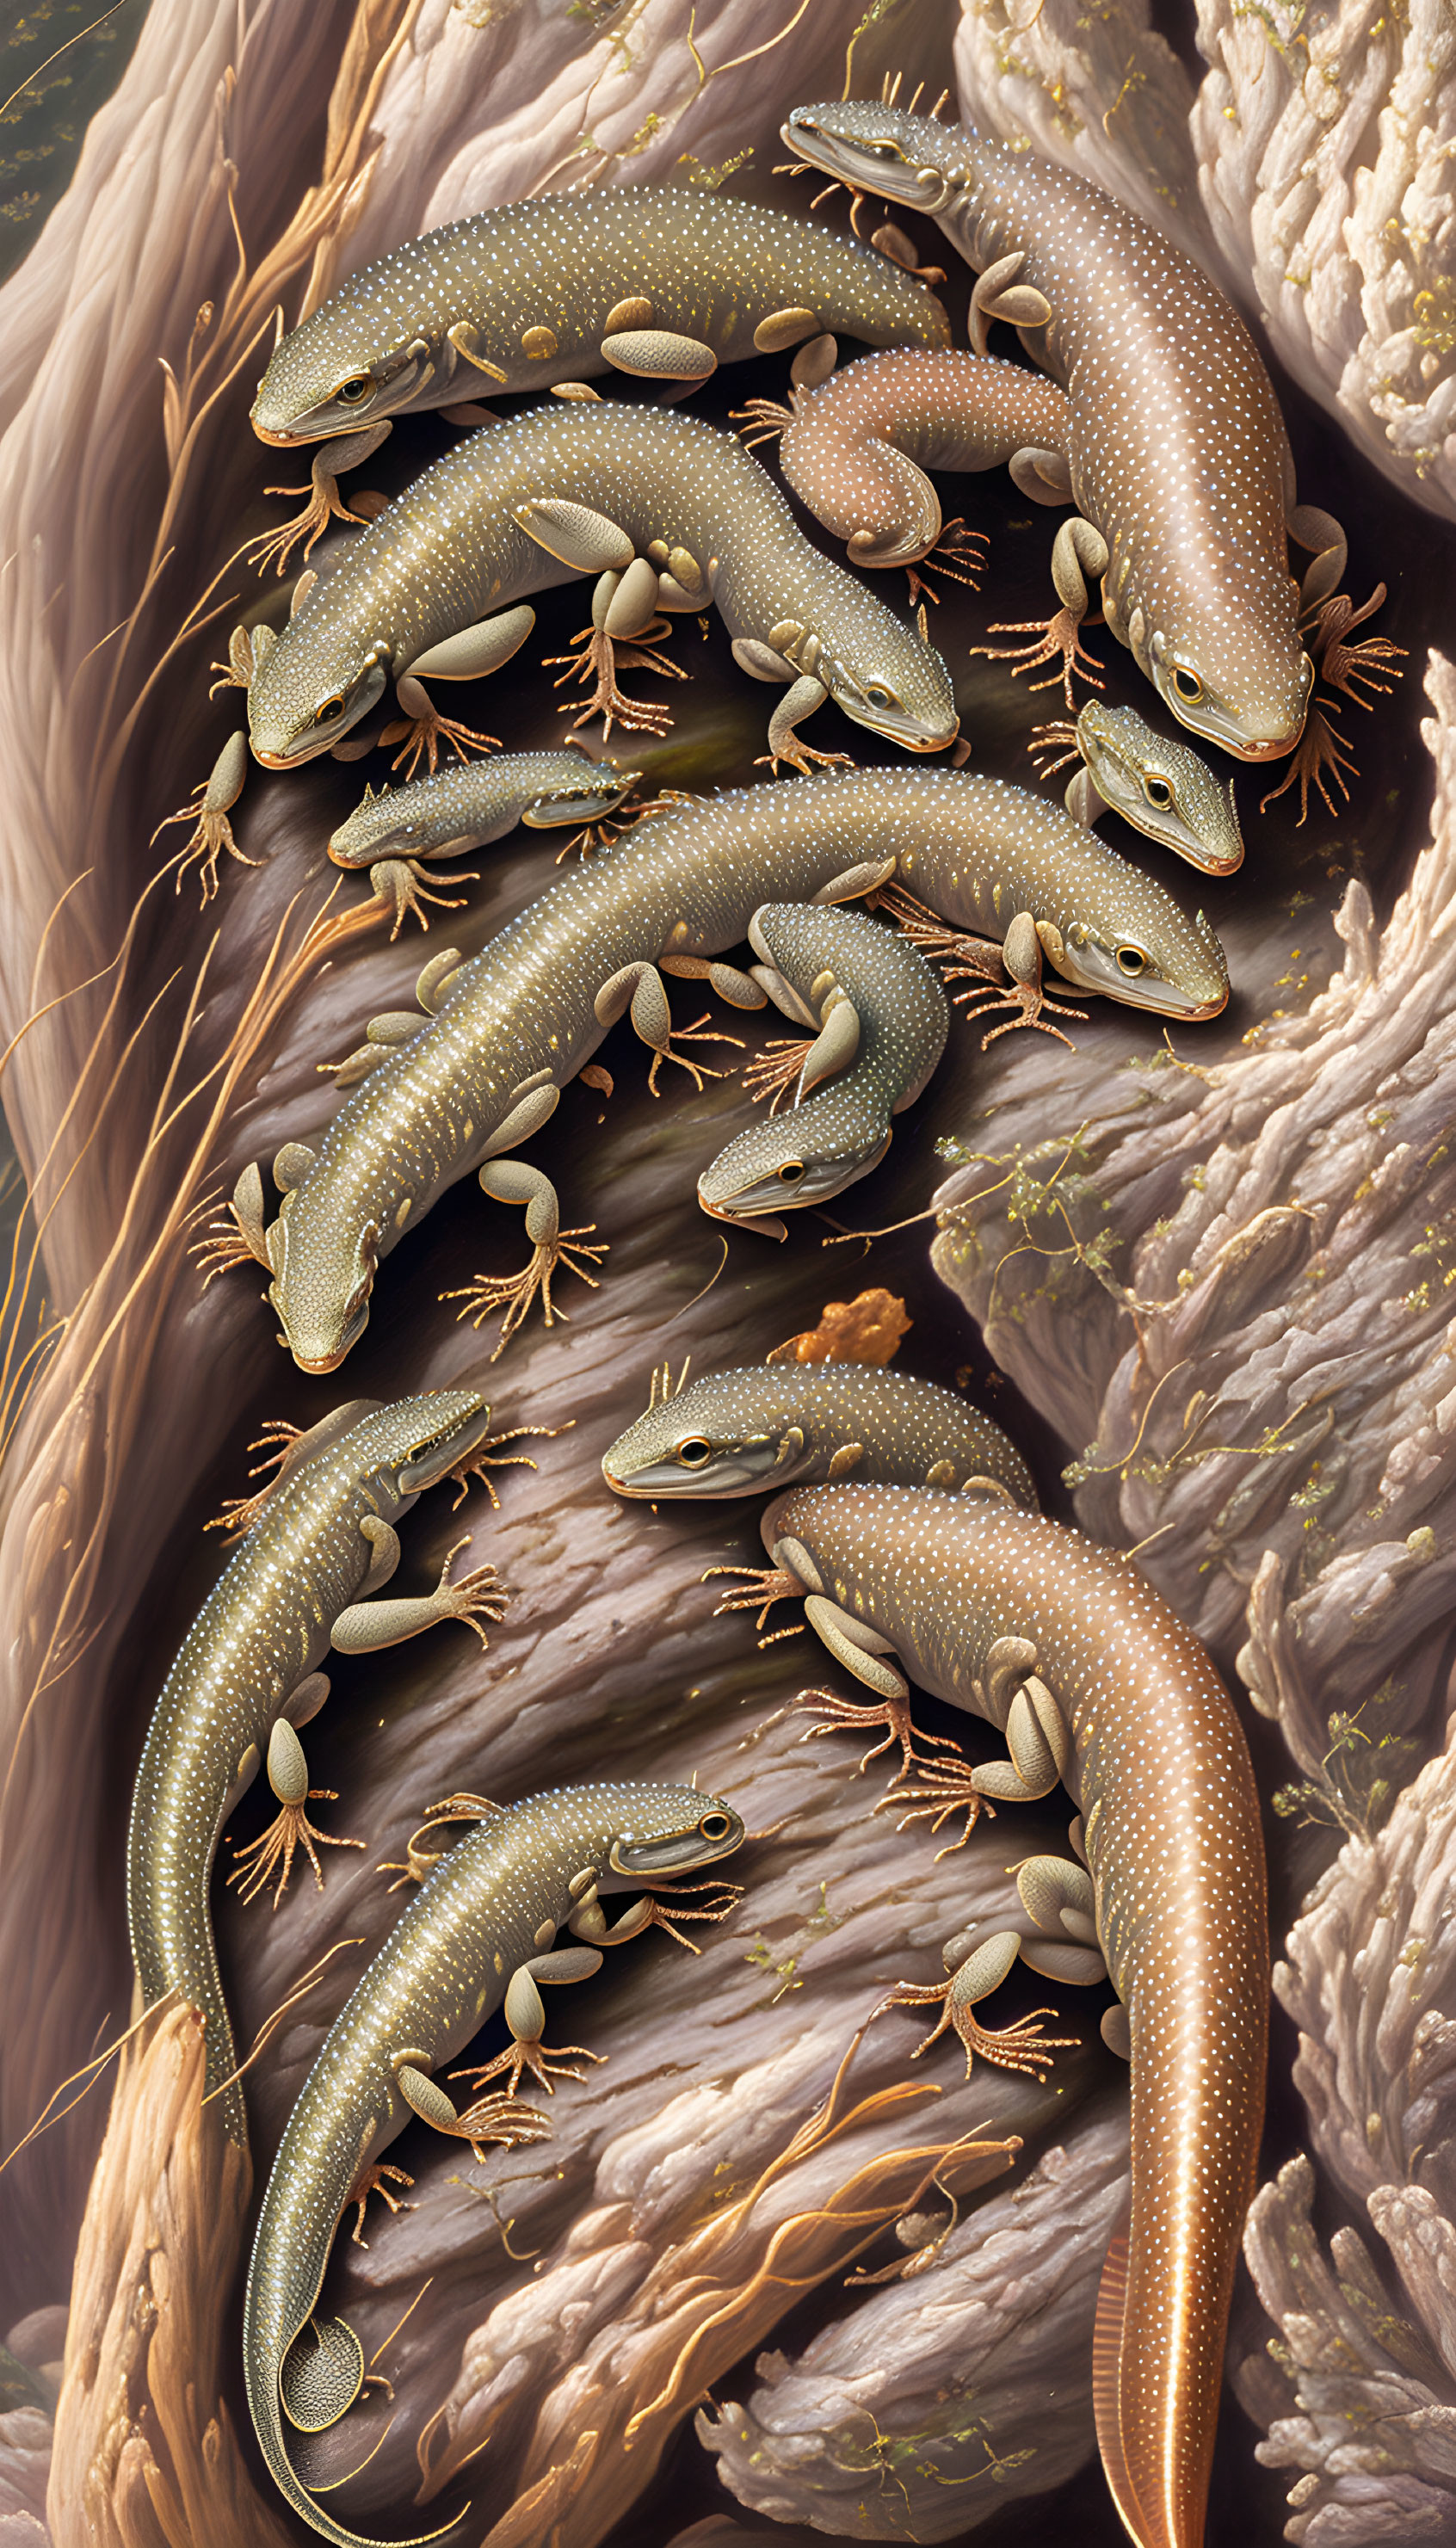 Salamanders 